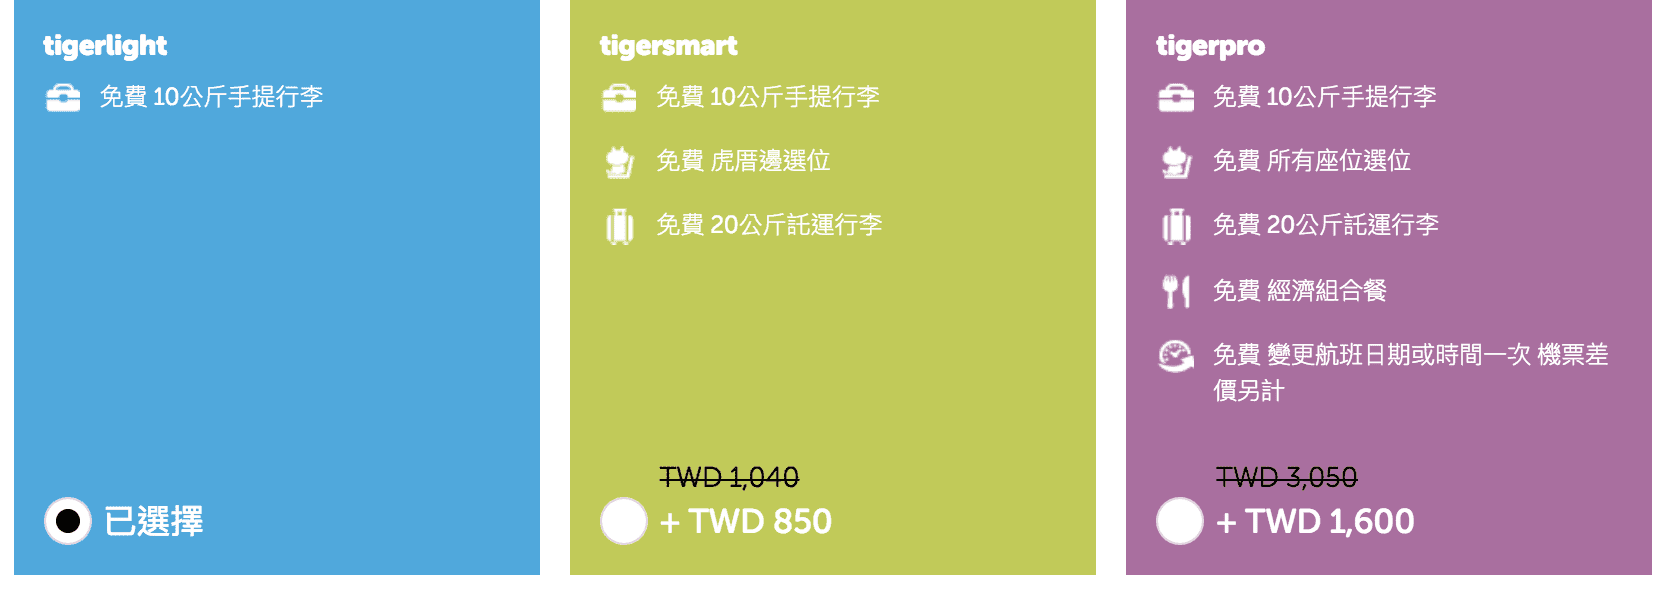 虎航tigerwow特價，可買3/6~6/15的日韓線優惠票價，最低3Ｋ喔！（訂票時間：3/6~3/7)